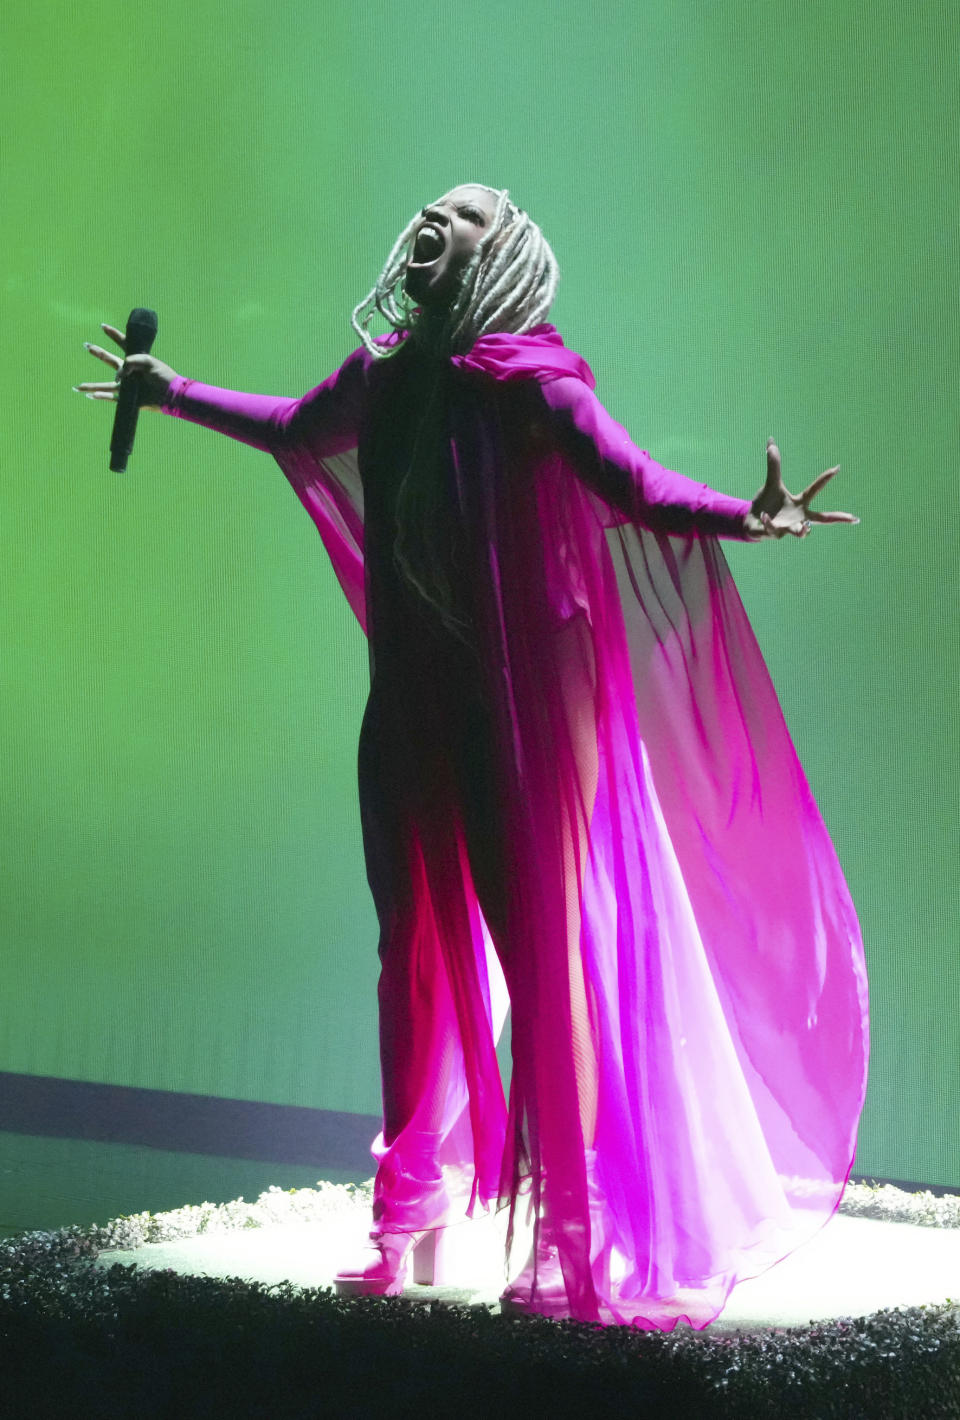 Chloe Bailey interpreta "Have Mercy" en la ceremonia de los Premios MTV a los Videos Musicales, el domingo 12 de septiembre de 2021 en el Barclays Center en Nueva York. (Foto por Charles Sykes/Invision/AP)